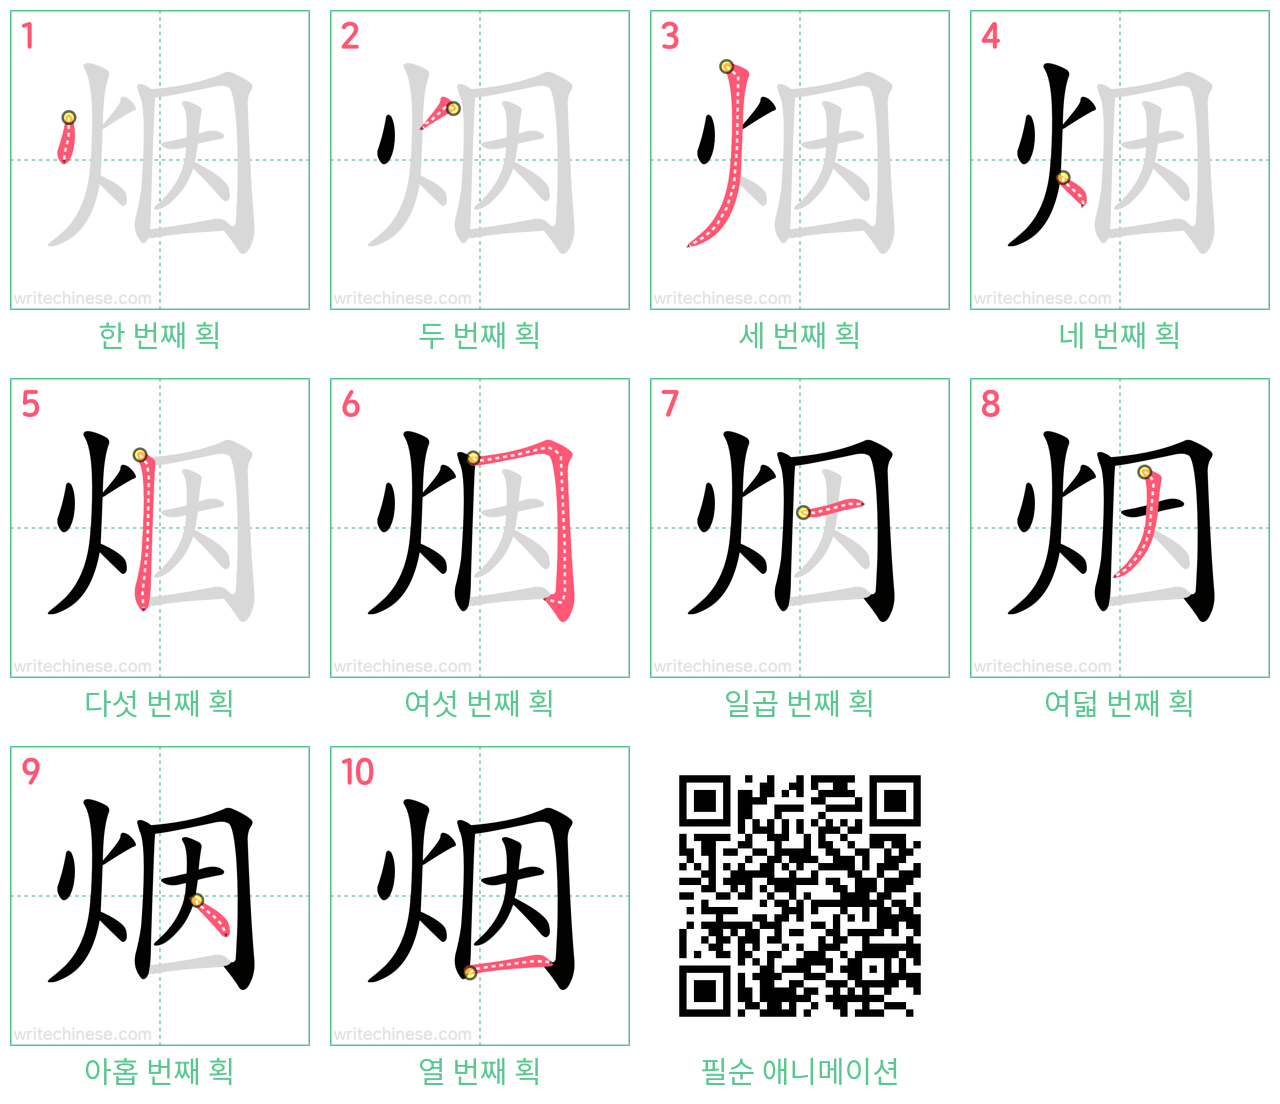 烟 step-by-step stroke order diagrams